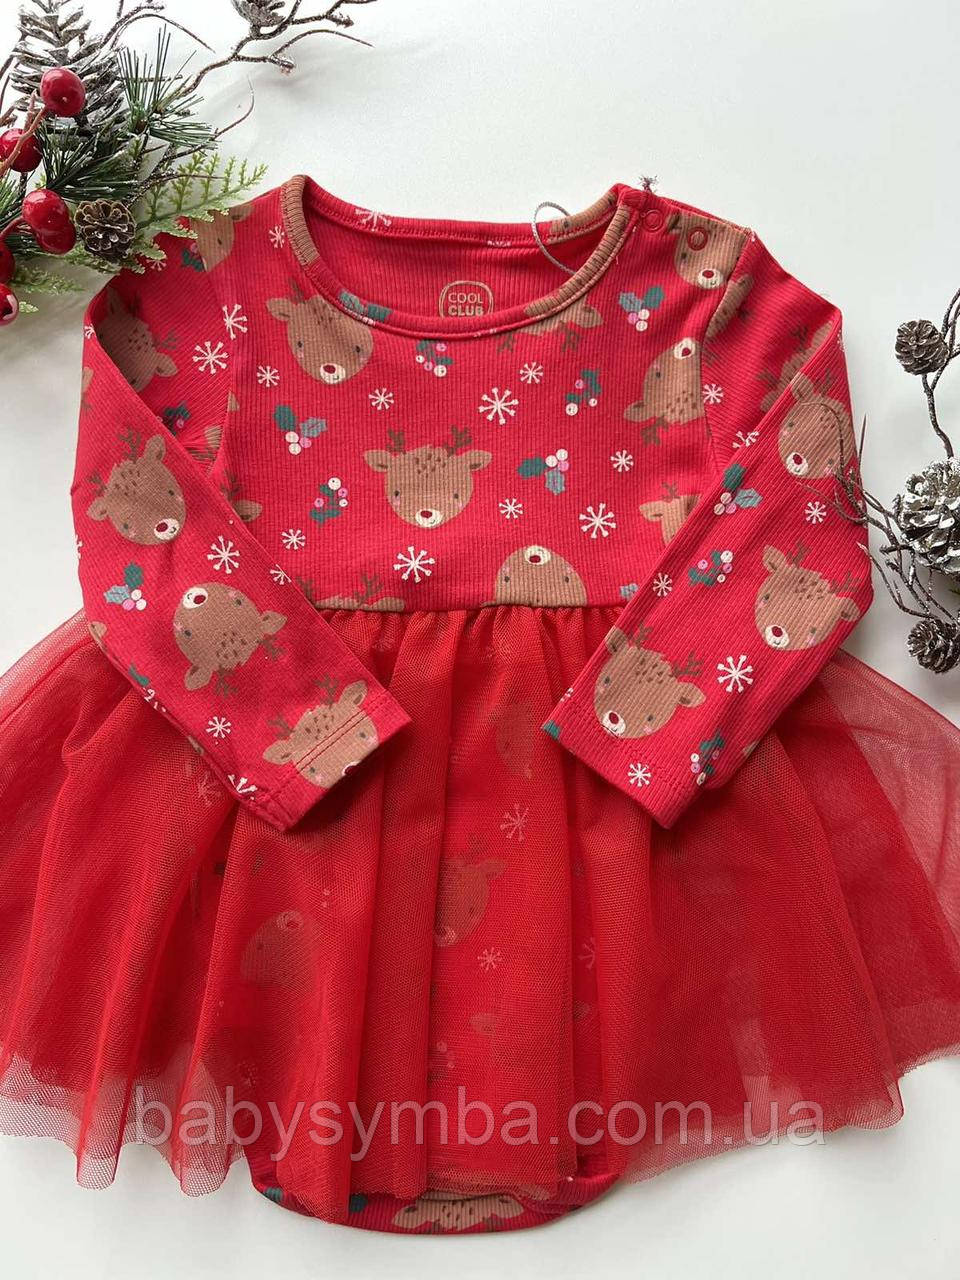 Новорічна дитяча сукня-боді червоного кольору від Cool&Club